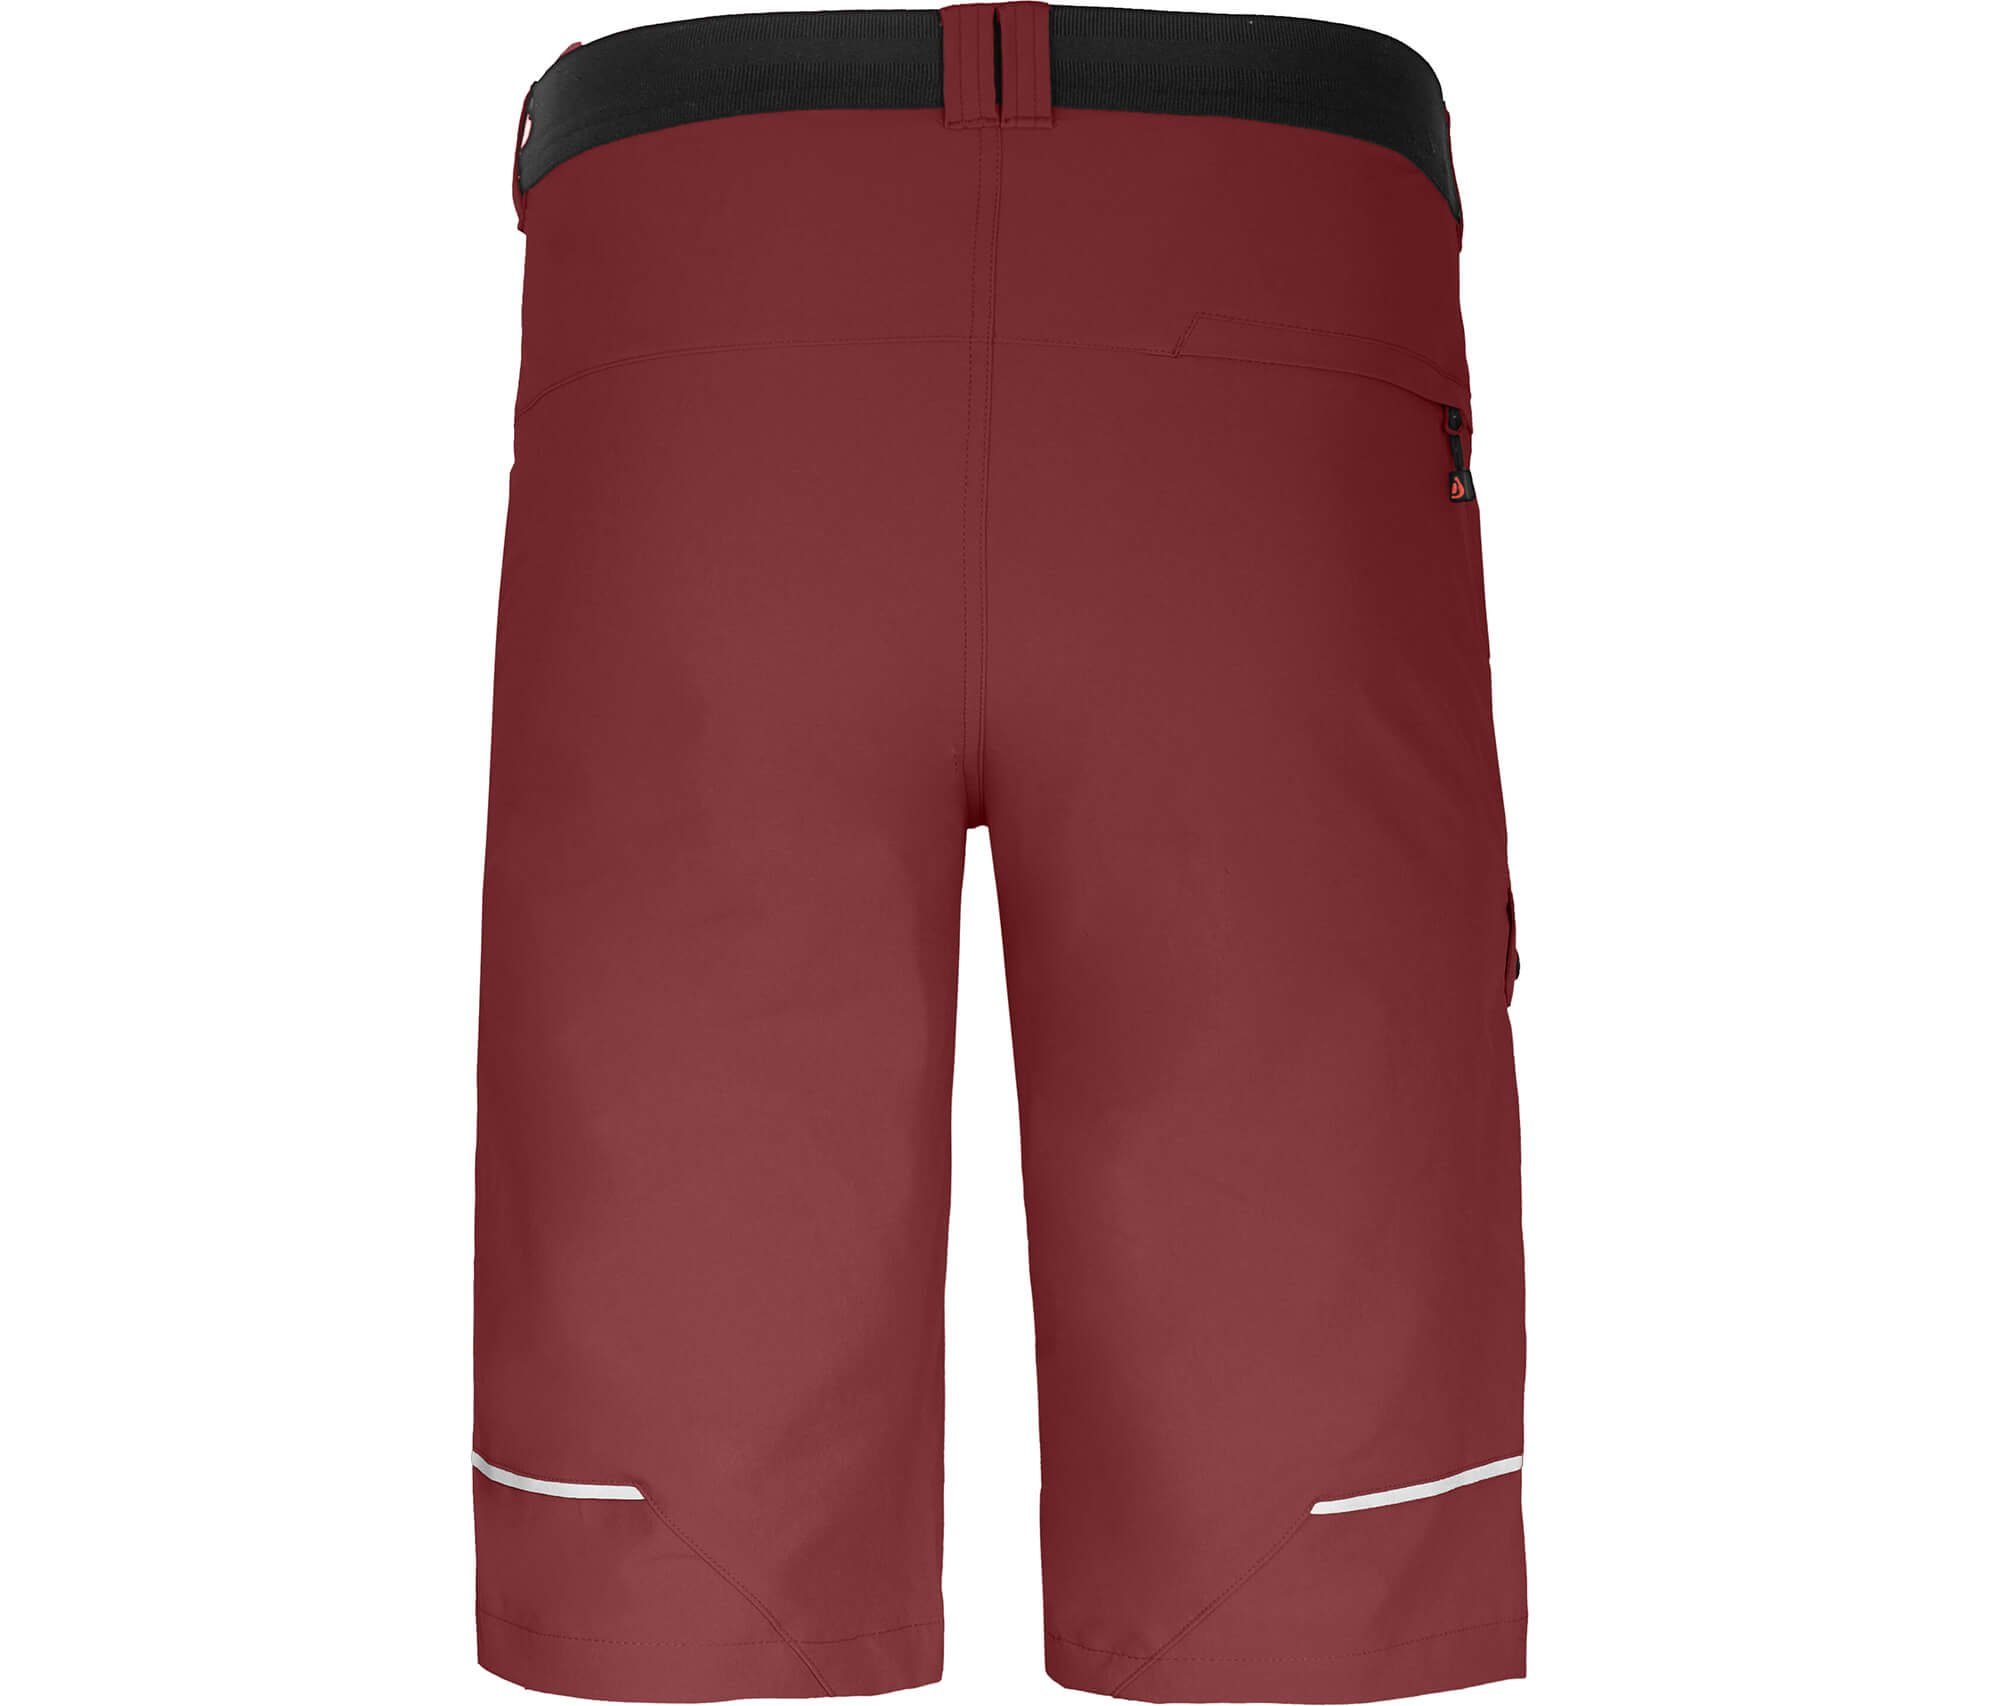 Bergson Outdoorhose Taschen, braun 8 Wandershorts, elastisch, rot recycelt, Bermuda Herren Normalgrößen FROSLEV